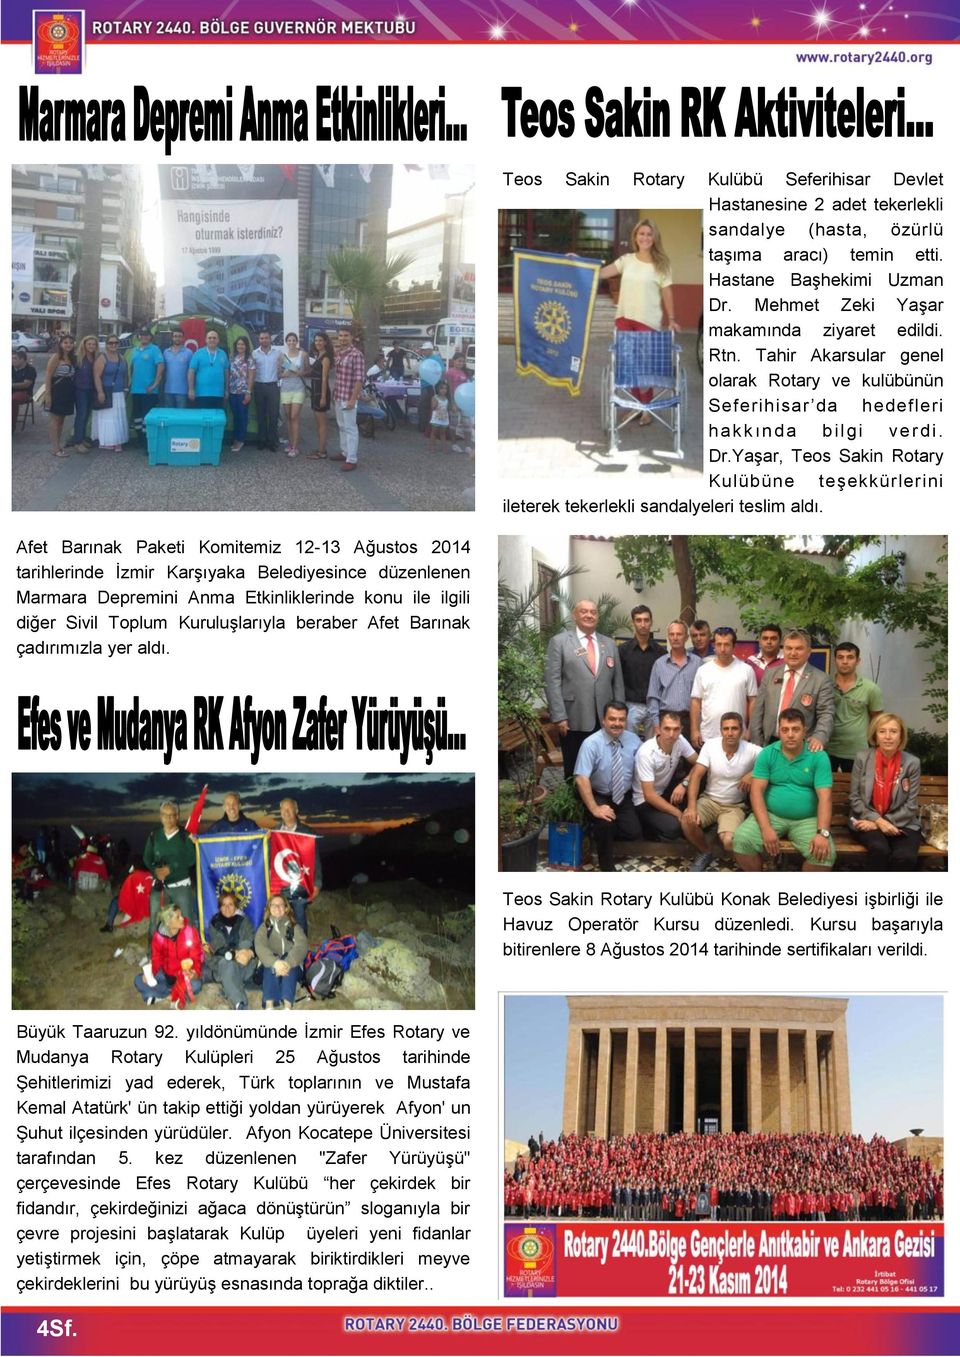 Afet Barınak Paketi Komitemiz 12-13 Ağustos 2014 tarihlerinde İzmir Karşıyaka Belediyesince düzenlenen Marmara Depremini Anma Etkinliklerinde konu ile ilgili diğer Sivil Toplum Kuruluşlarıyla beraber